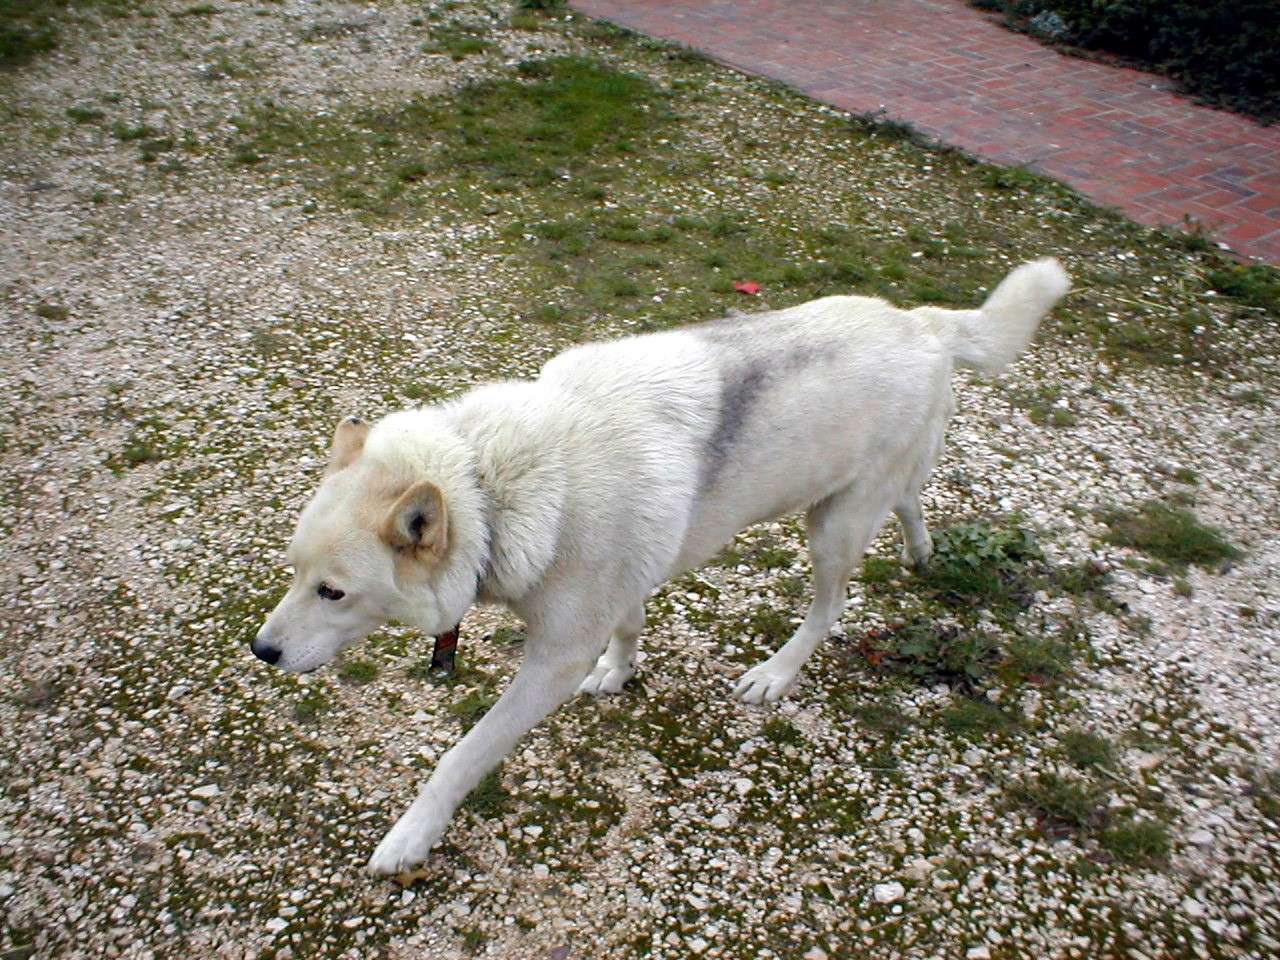 le chien alaskan qu'est ce que c'est ?? - Page 2 Pb020110